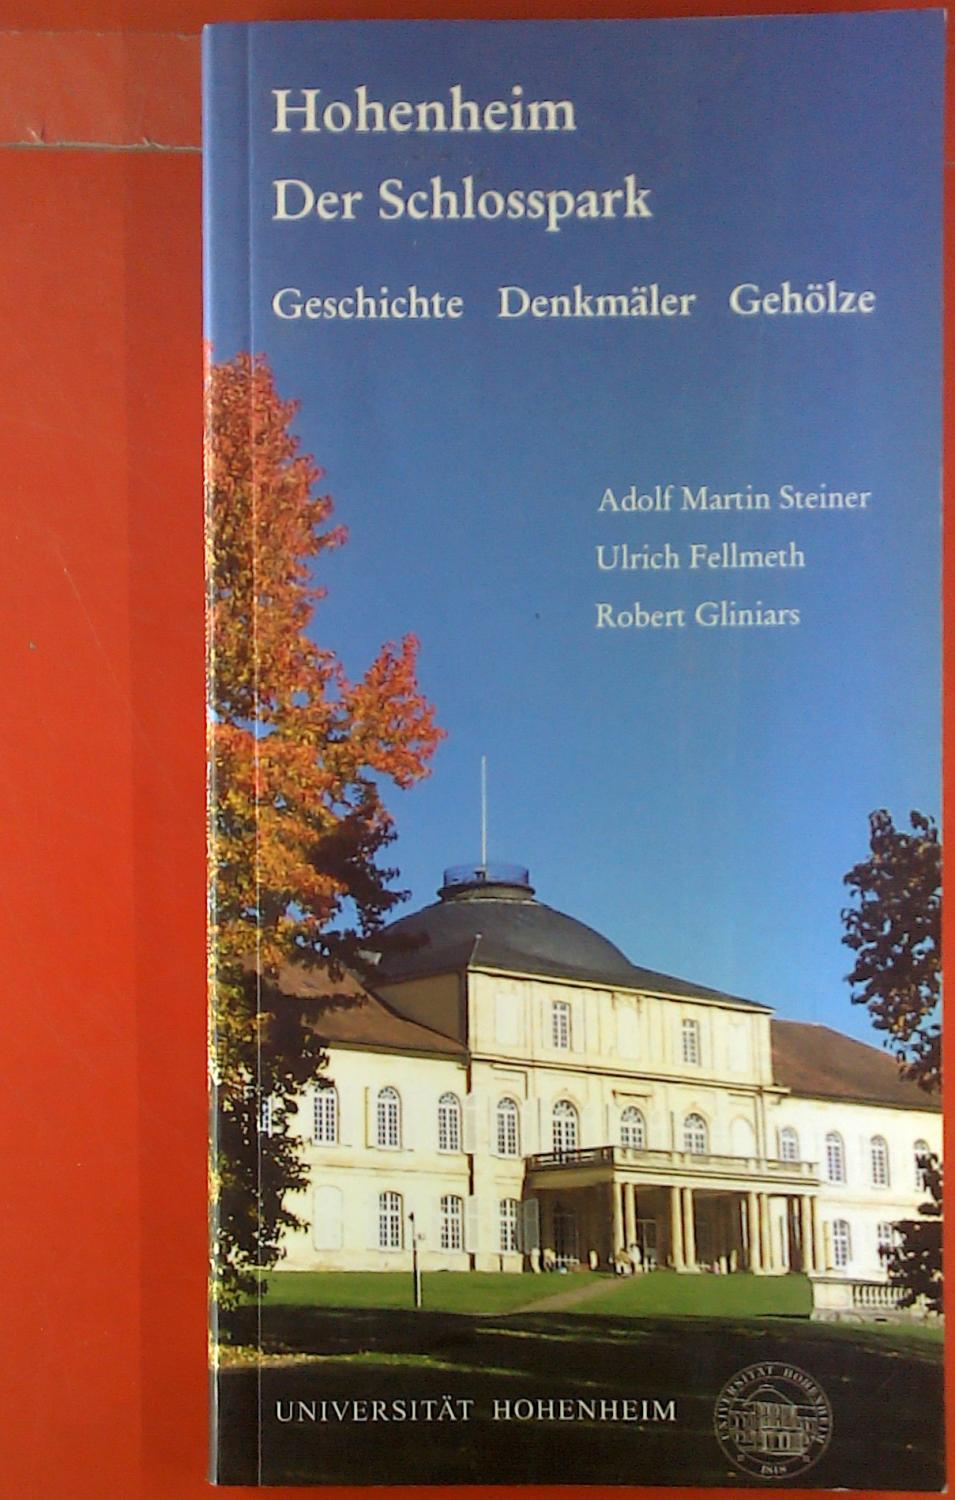 Hohenheim. Der Schlosspark. Geschichte - Denkmäler - Gehölze. - Adolf Martin Steiner, Ulrich Fellmeth, Robert Gliniars